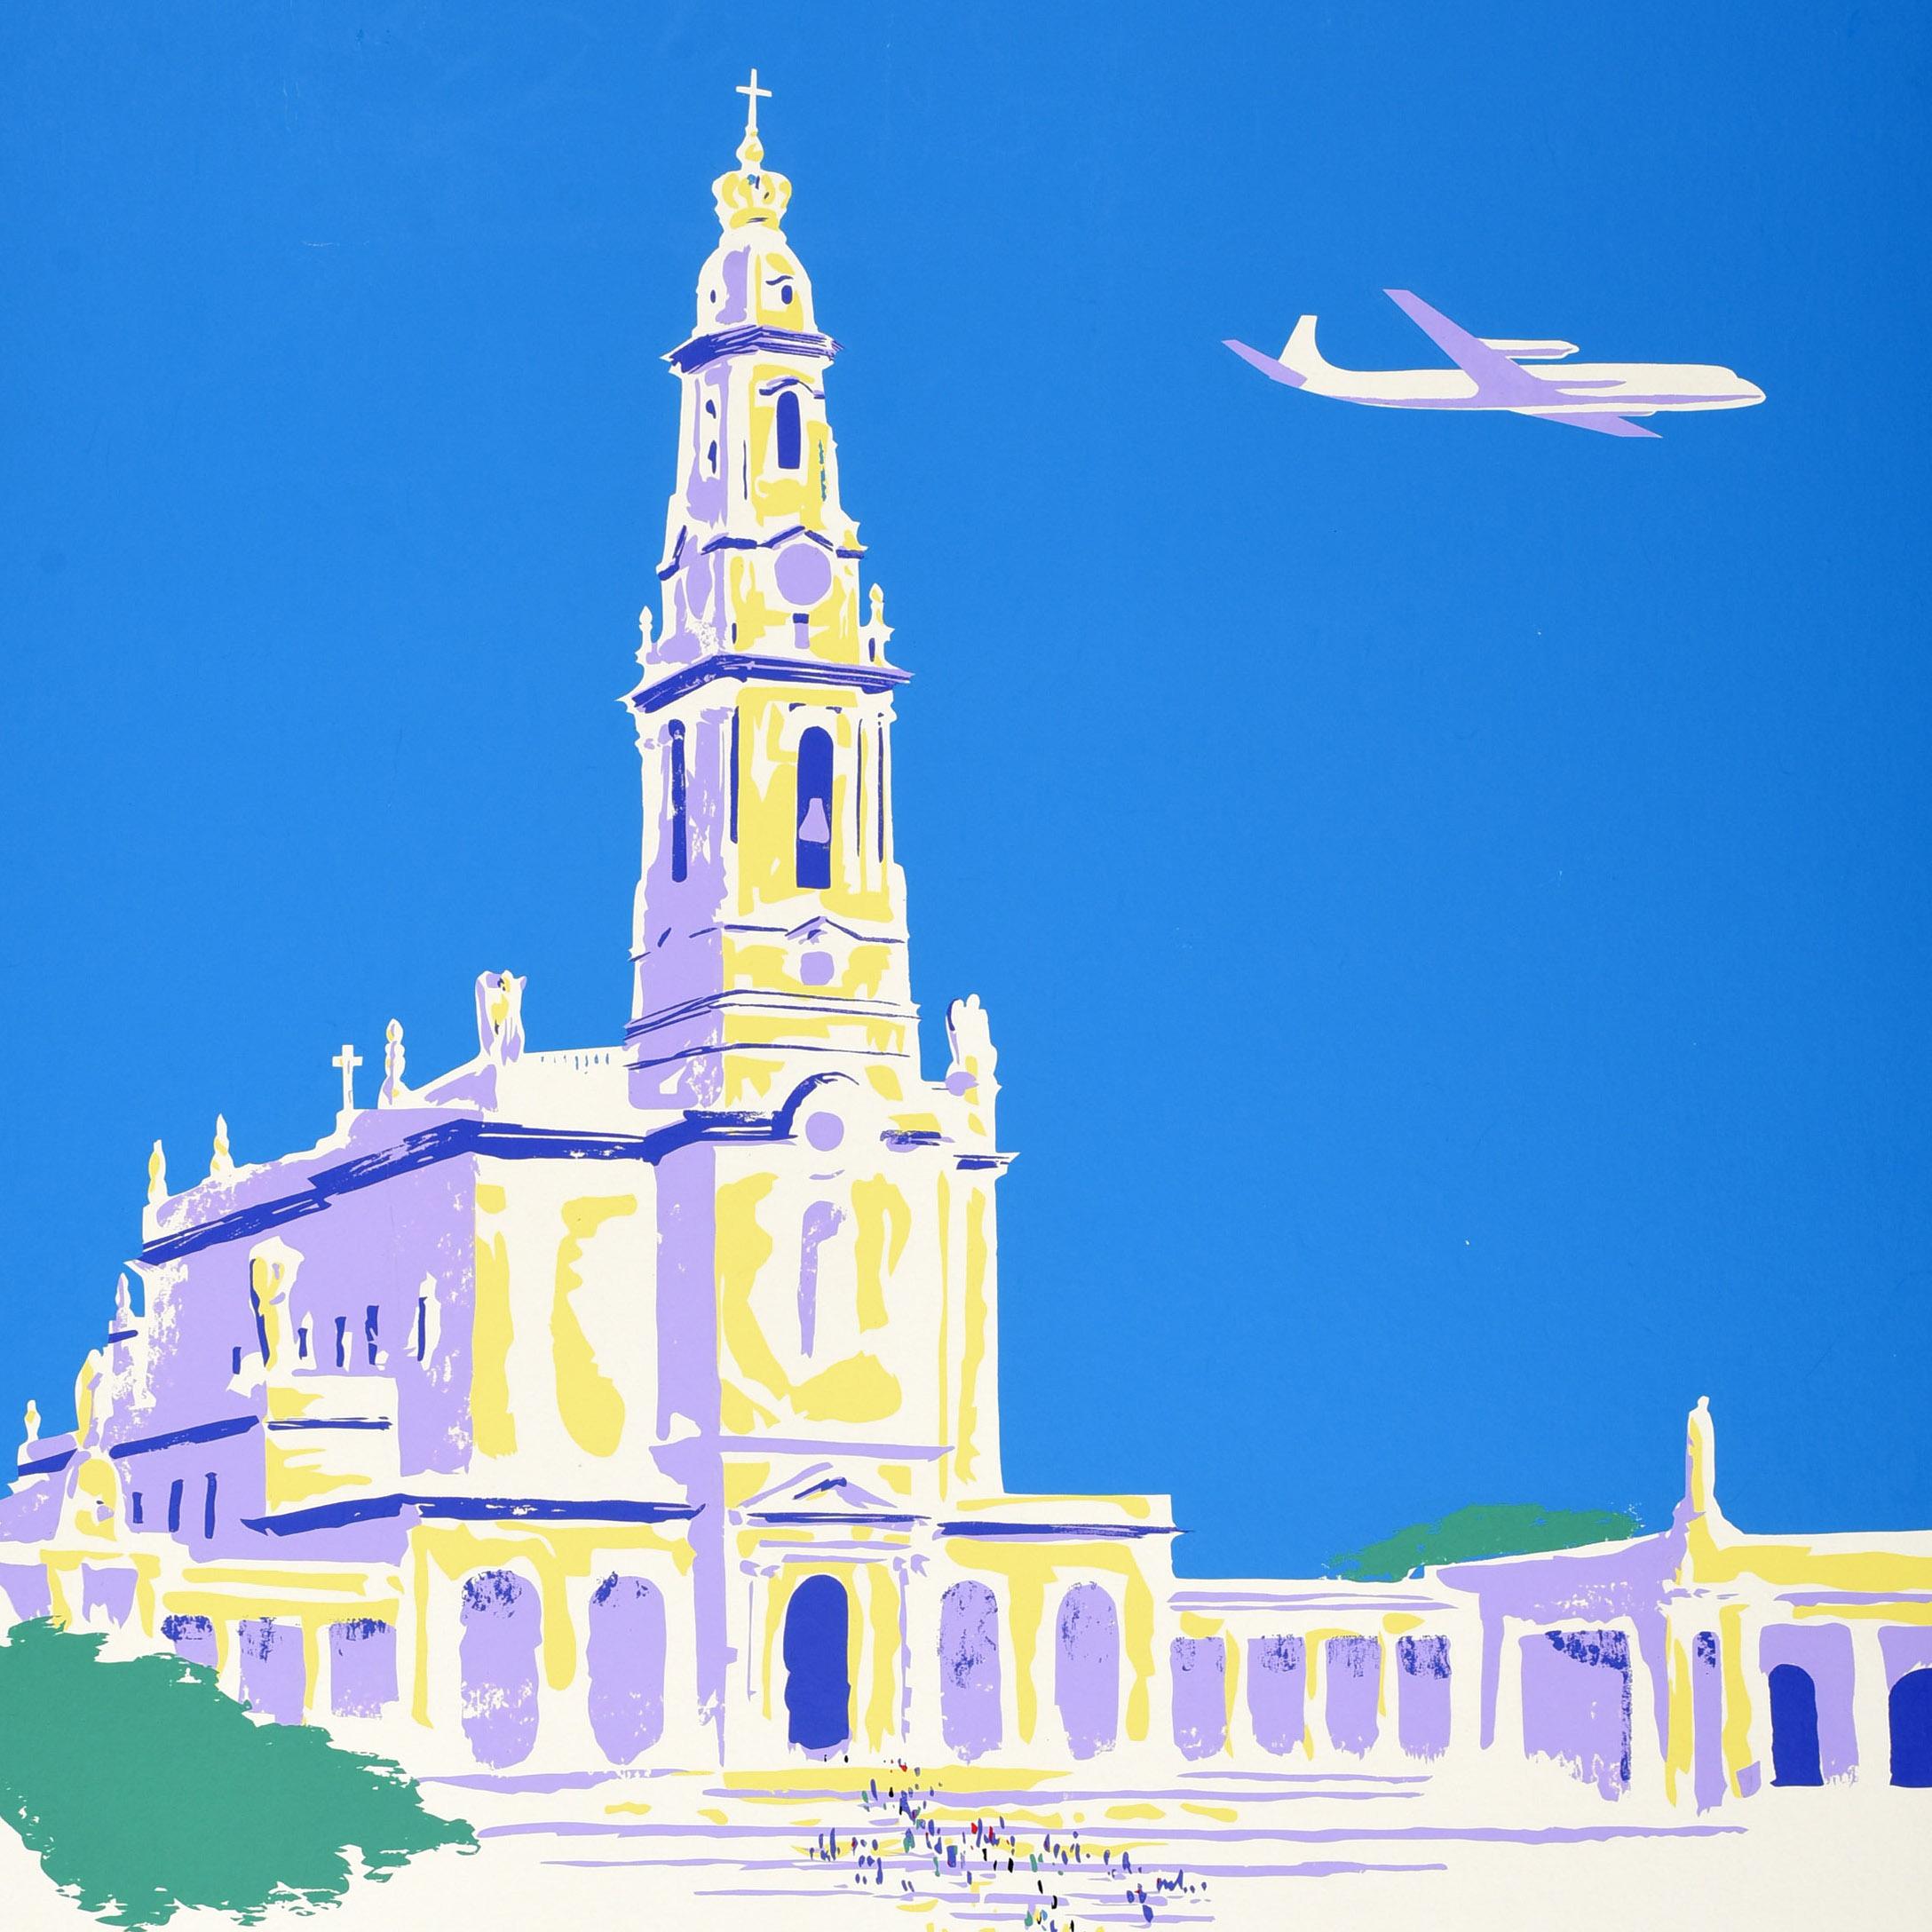 Affiche de voyage originale vintage pour Fatima Irish International Airlines The Friendly Airline représentant des personnes marchant devant la Basilique de Notre Dame du Rosaire dans le Sanctuaire de Fatima au Portugal avec un avion volant